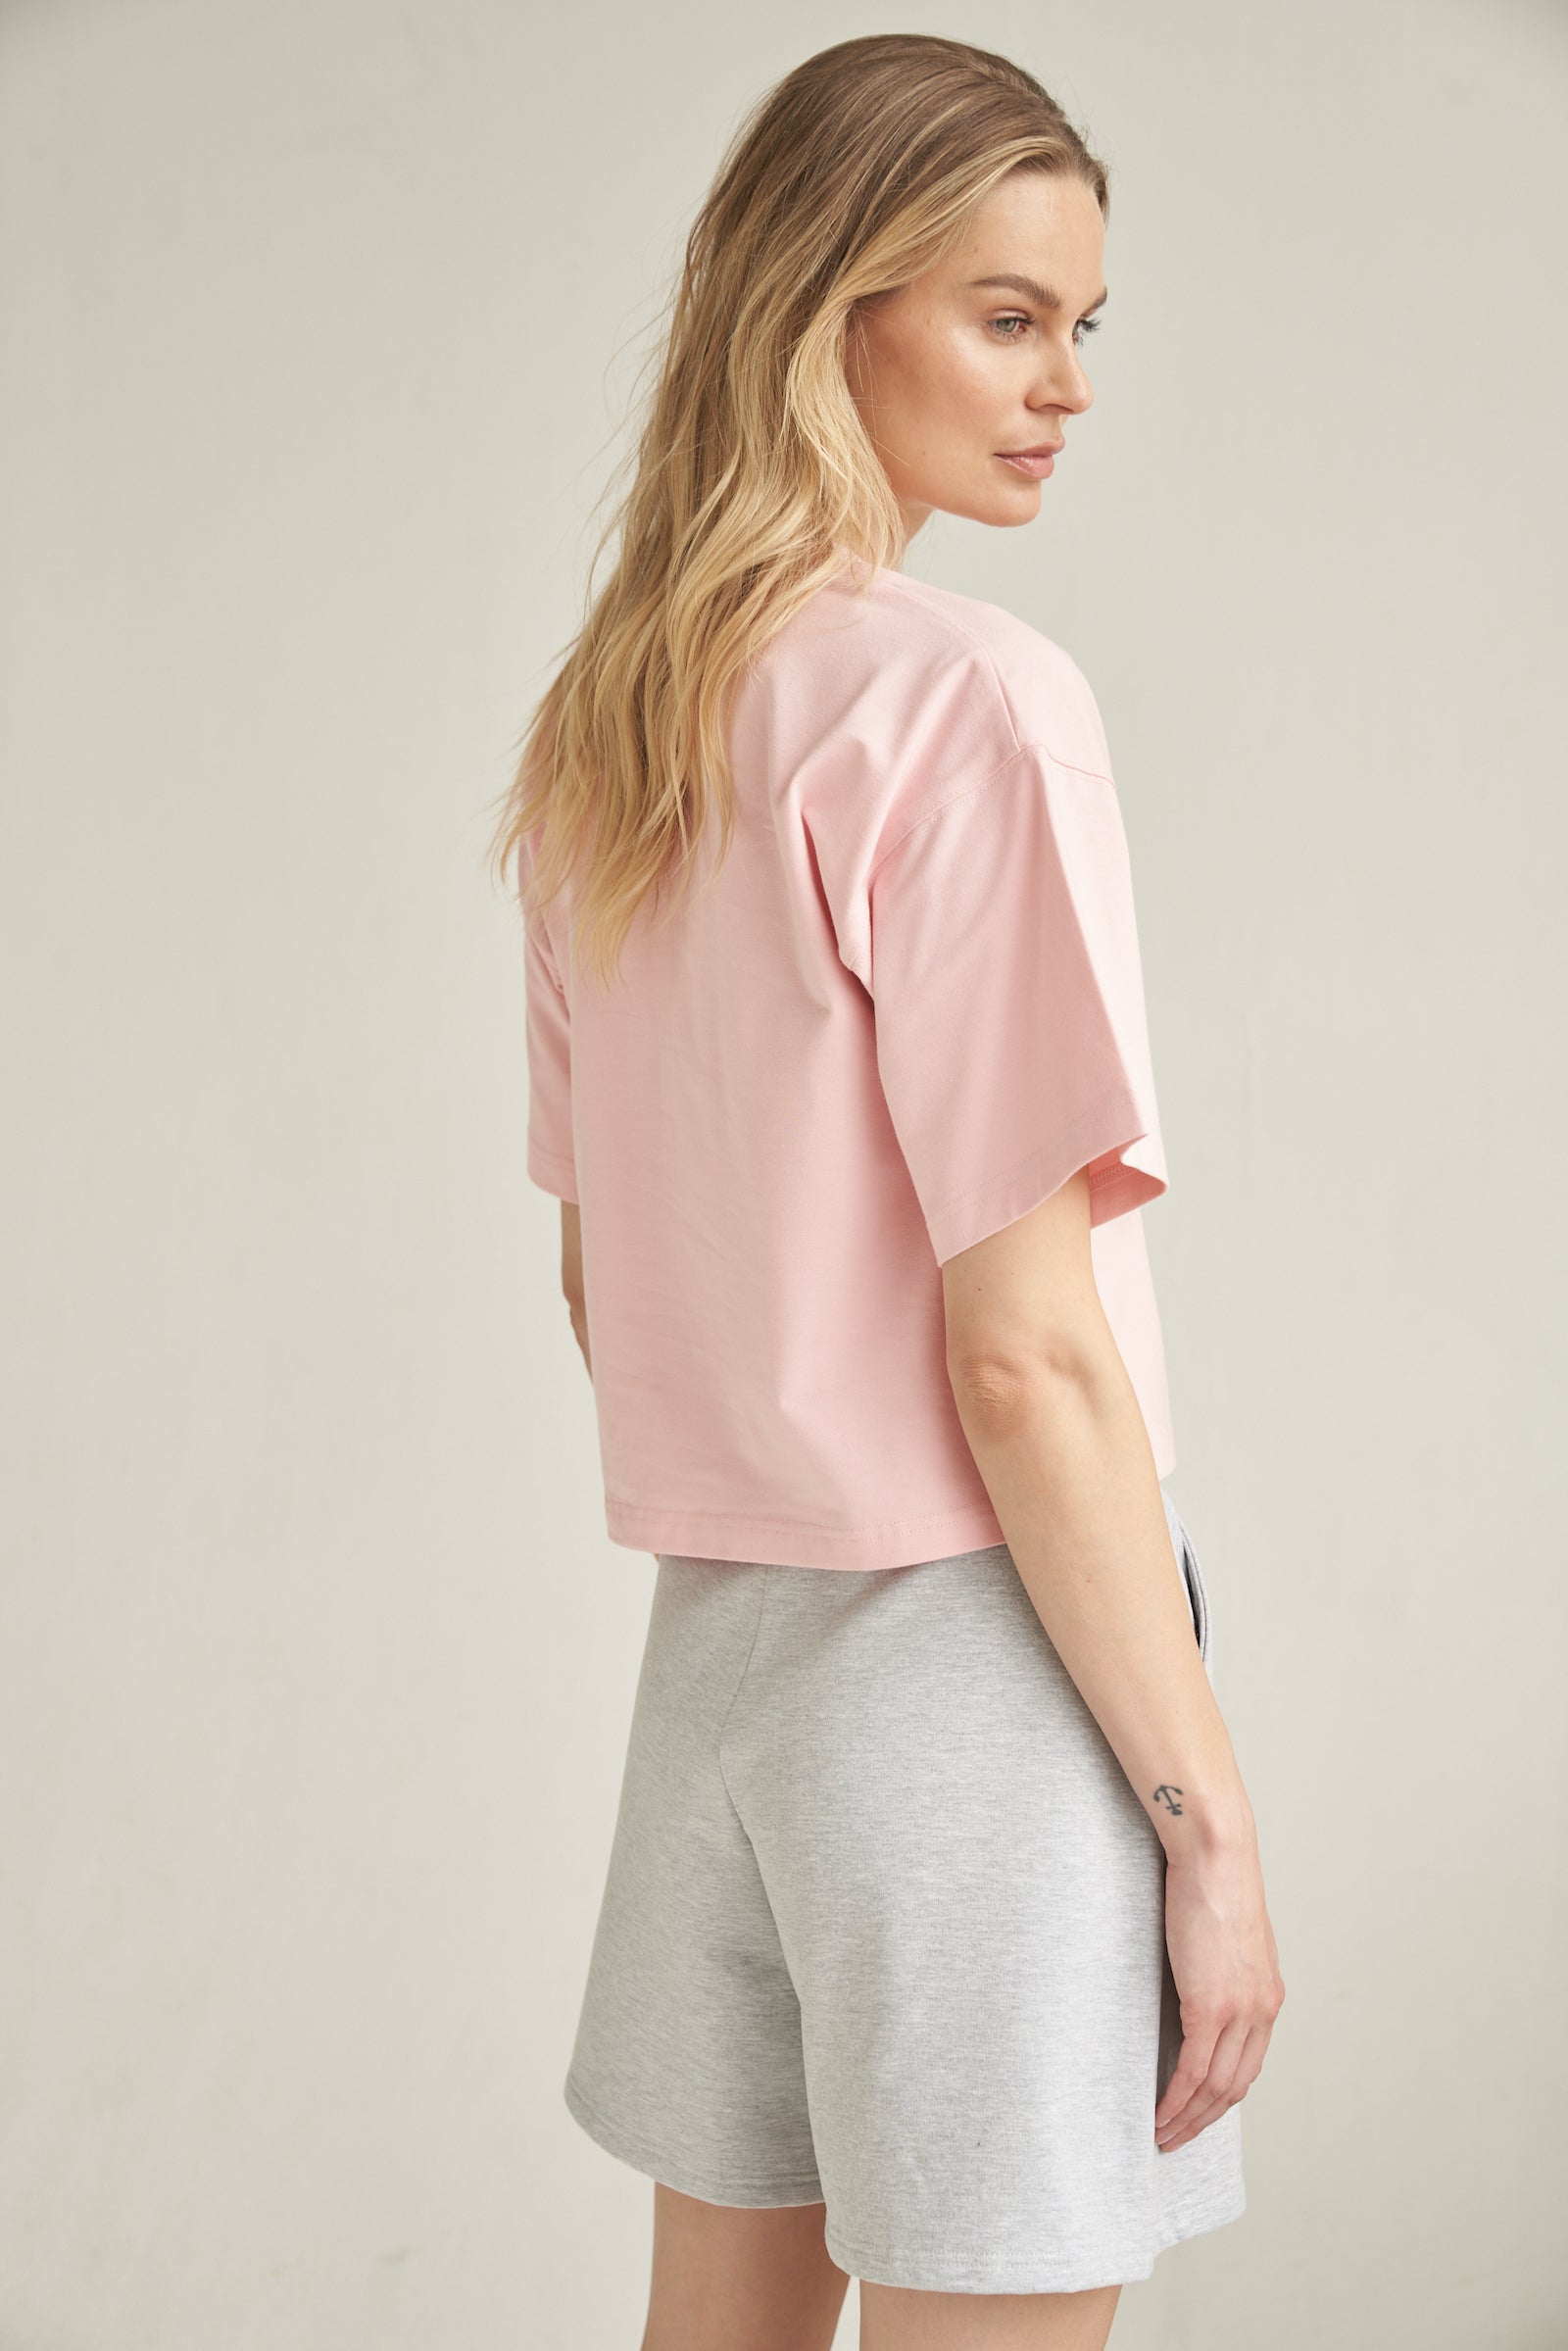 Ein blondes Model trägt eine Baumwoll-Shorts in der Farbe grau. Sie kombiniert das Outfit mit einem Shirt in rosa. Das Model steht seitlich vor einem hellen Hintergrund. Der Rücken ist zu erkennen und ihre Hände befinden sich in den Seitentaschen der kurzen Hose.